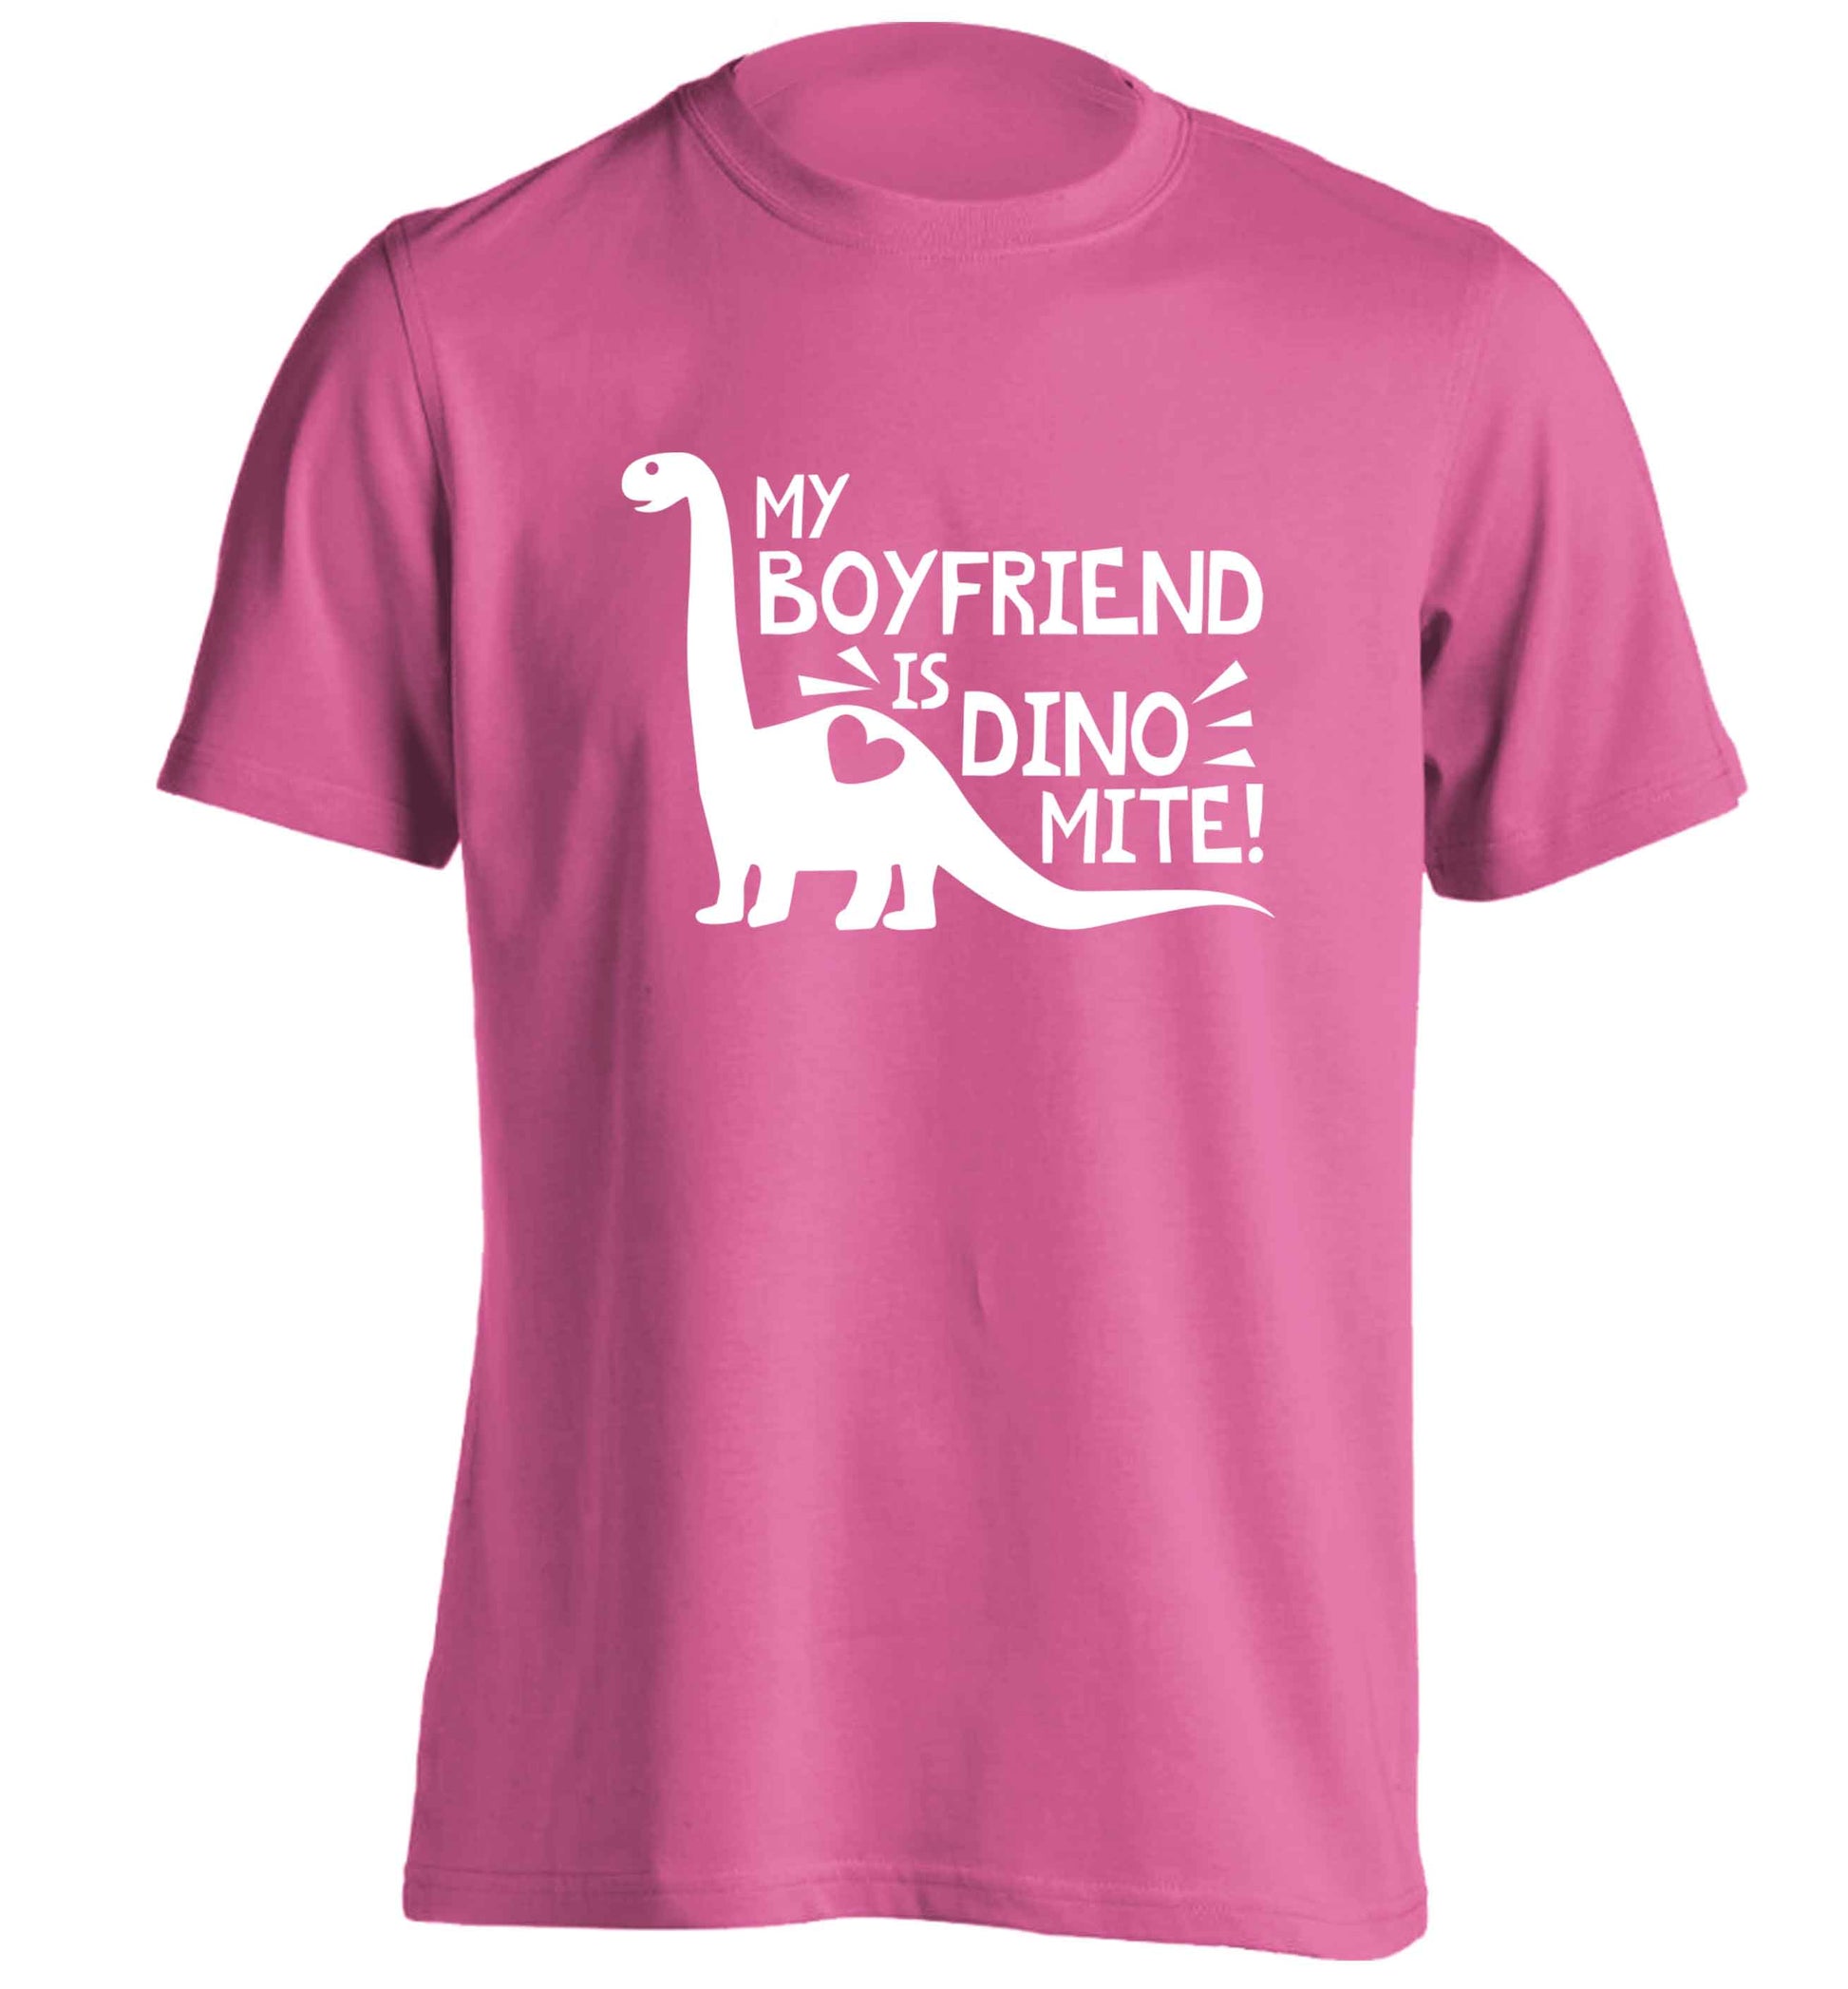 My boyfriend is dinomite! adults unisex pink Tshirt 2XL